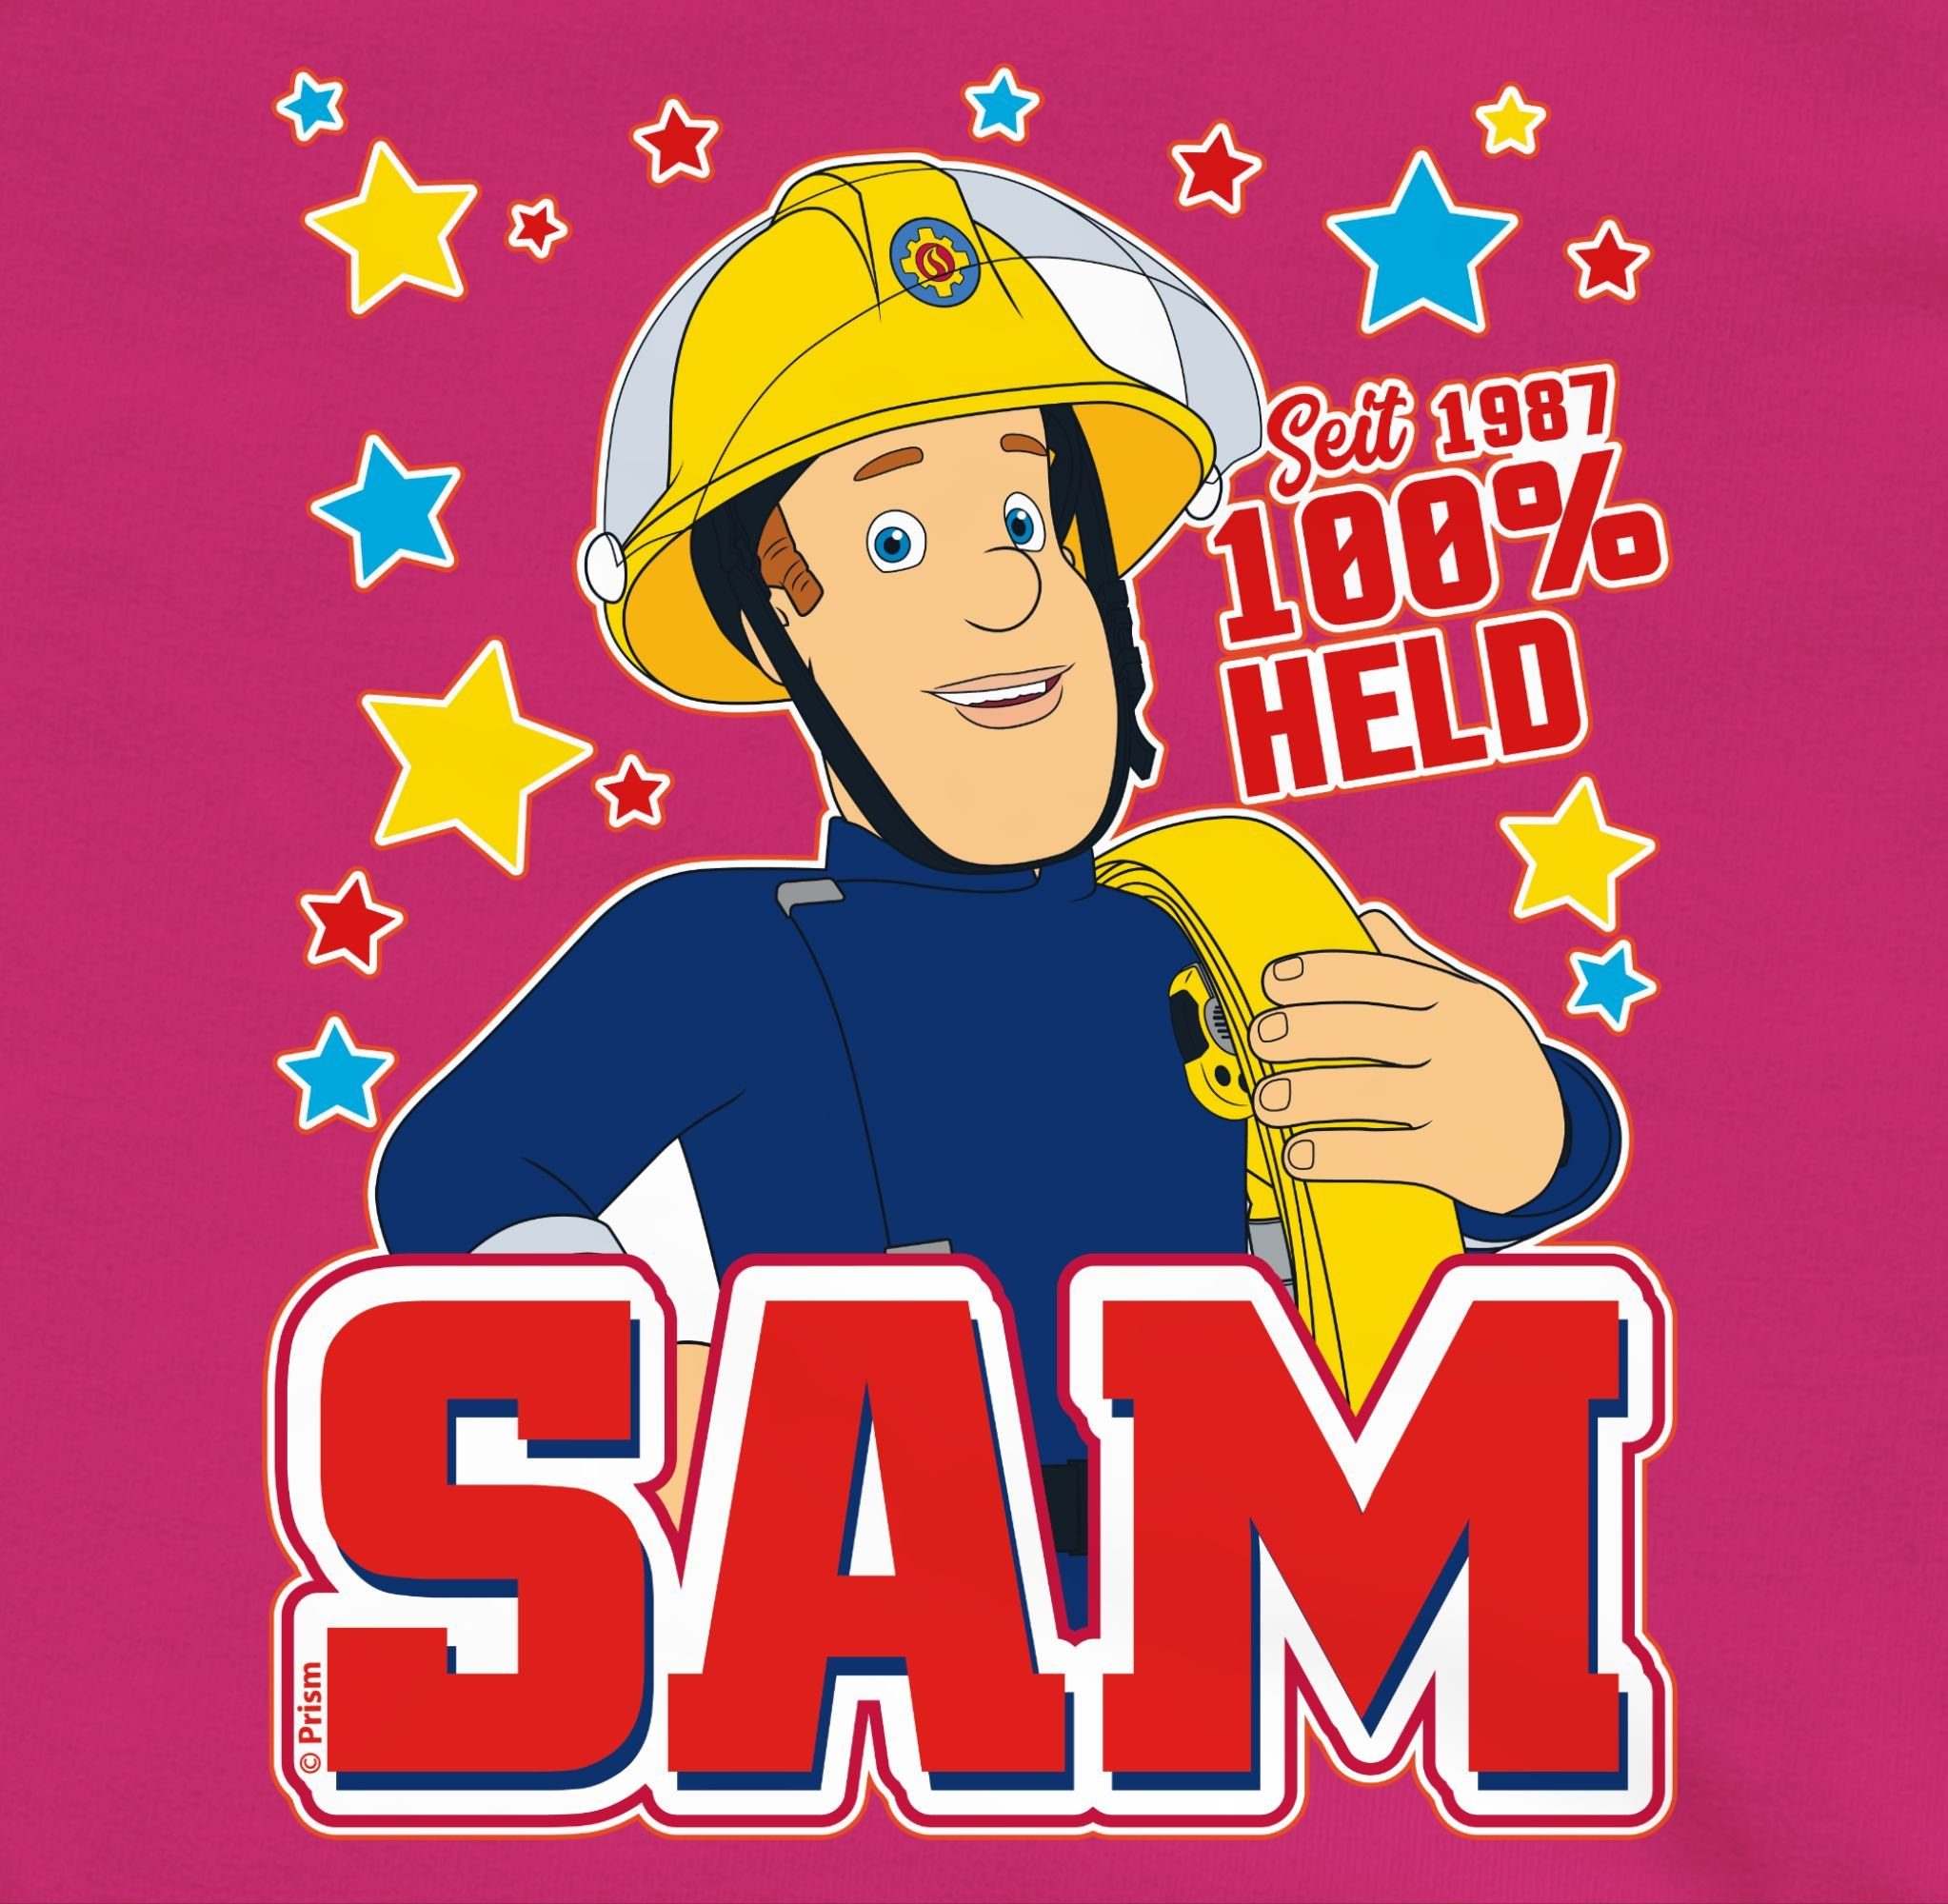 Kinder Kids (Gr. 92 -146) Shirtracer Sweatshirt Seit 1987 - 100% Held - Sam - Feuerwehrmann Sam Mädchen - Kinder Premium Pullove